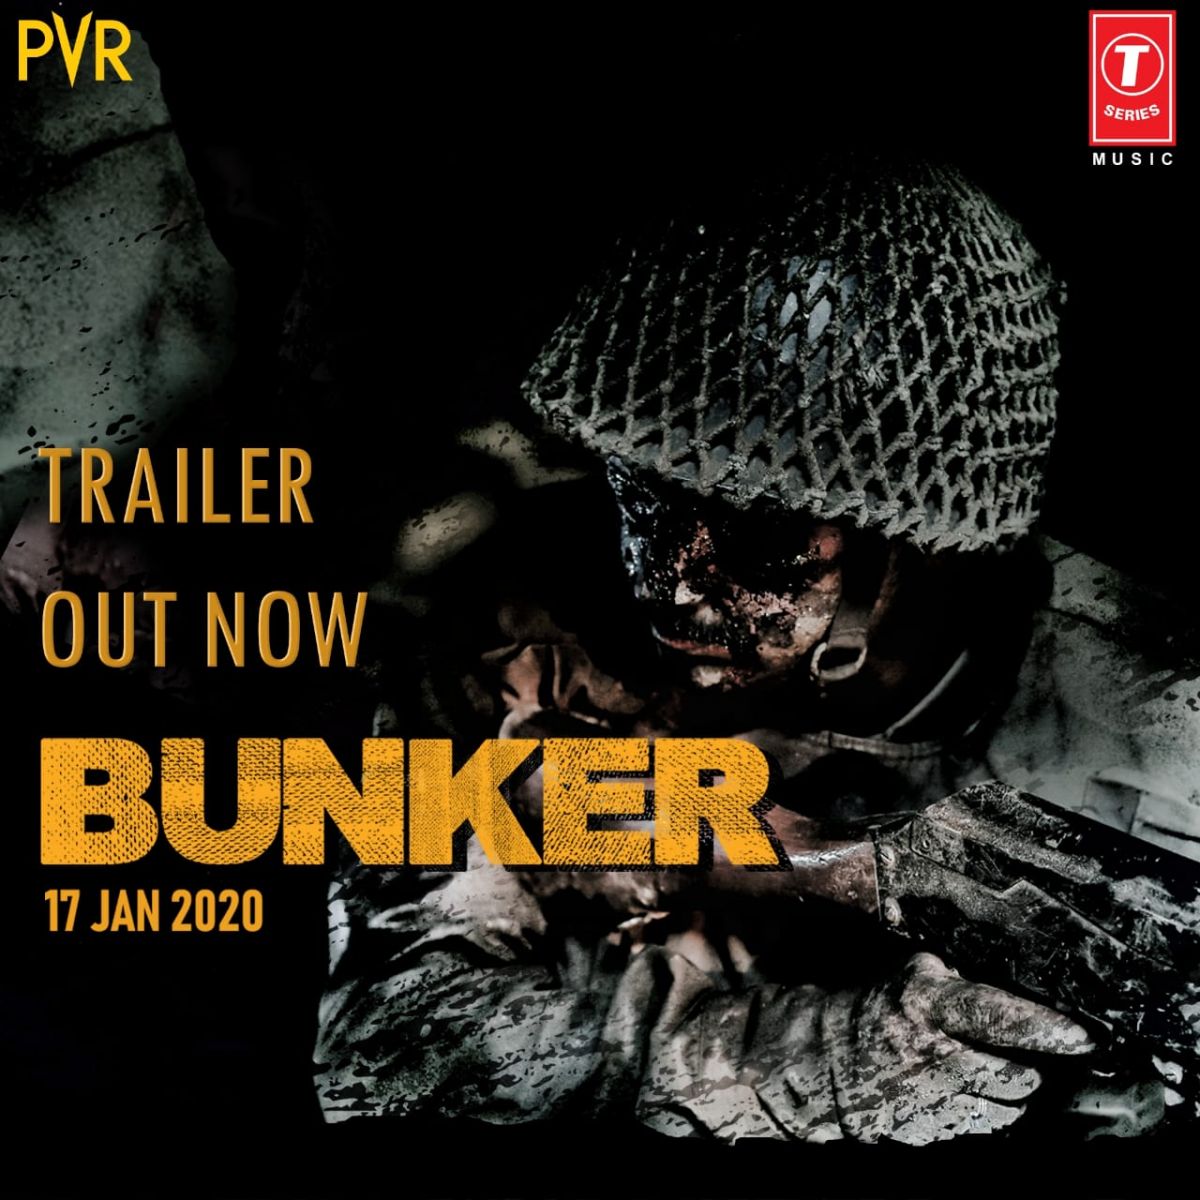 बंकर का ट्रेलर आउट, सैनिकों के मेंटल हेल्थ पर आधारित है यह फिल्म